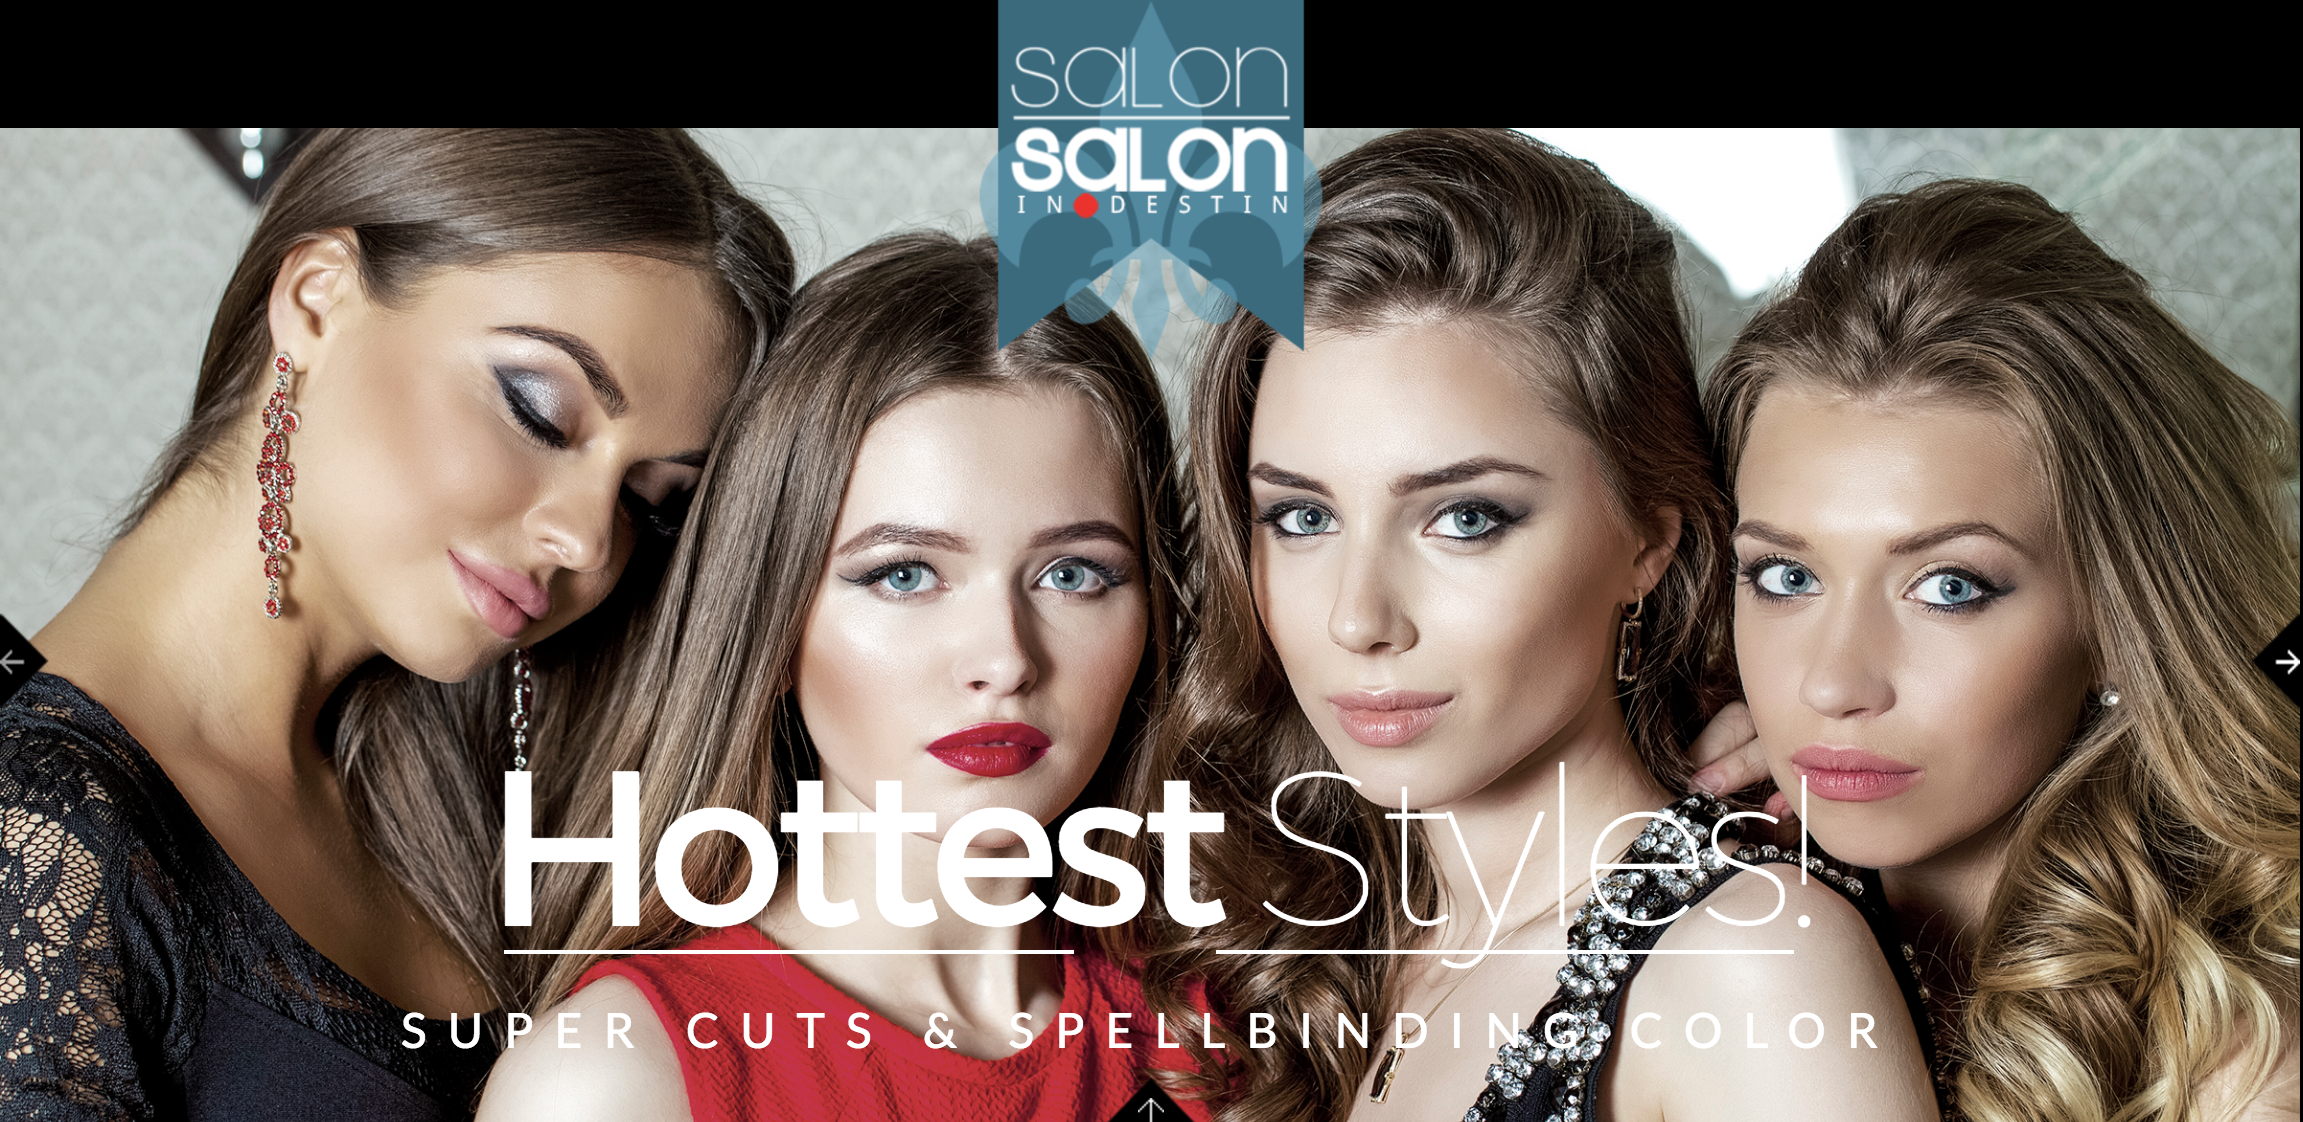 Salon Salon in Destin - Destin hair salon